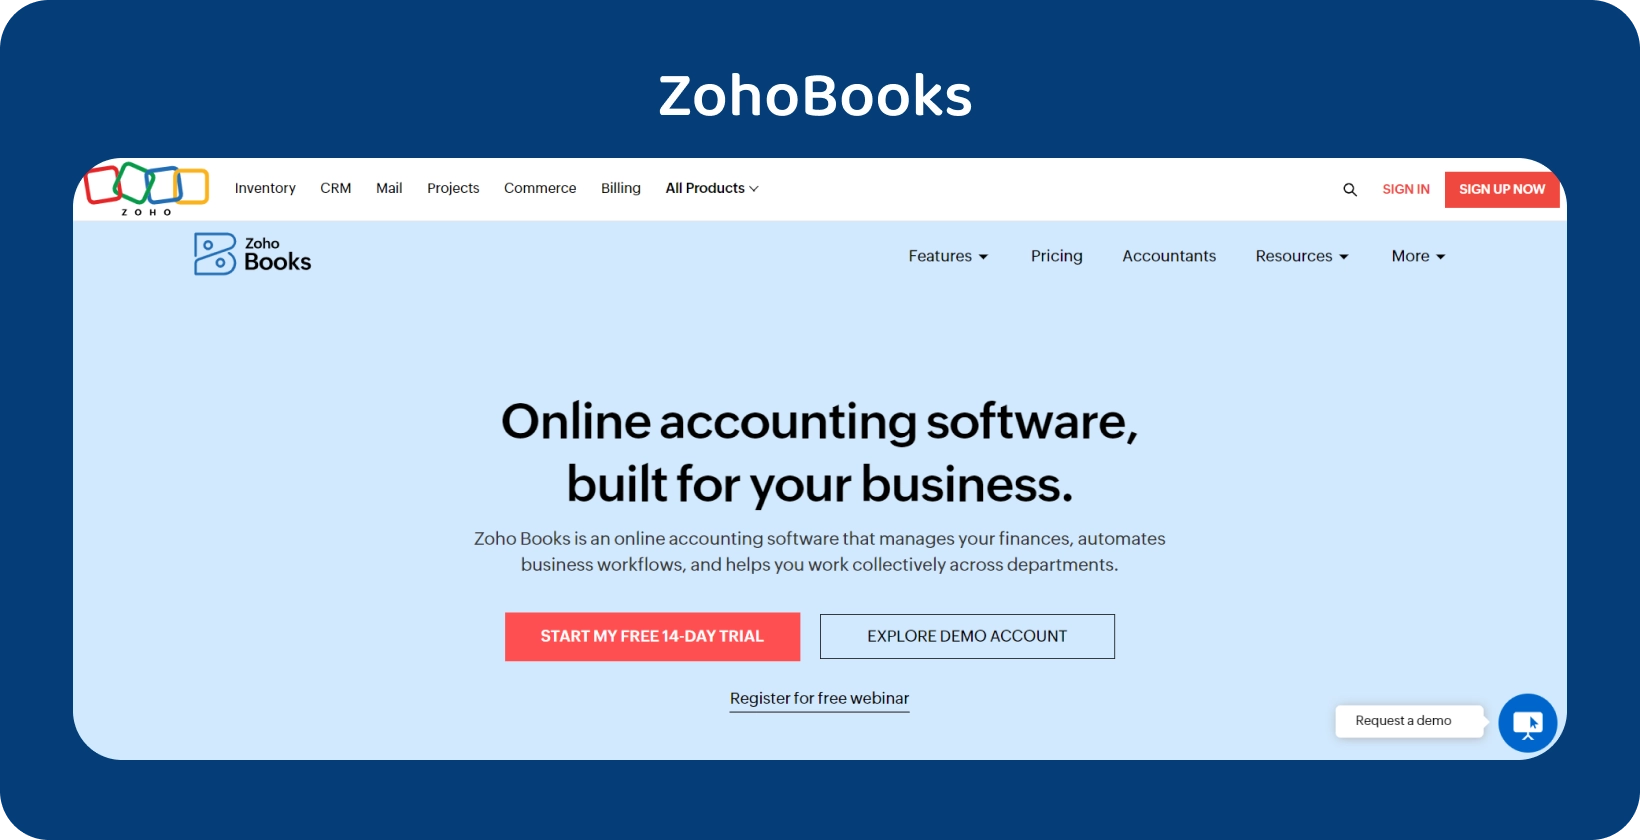 באנר דף הבית Zoho Books מדגיש את תוכנת הנהלת החשבונות המקוונת המותאמת לעסקים שלו לייעול התפעול